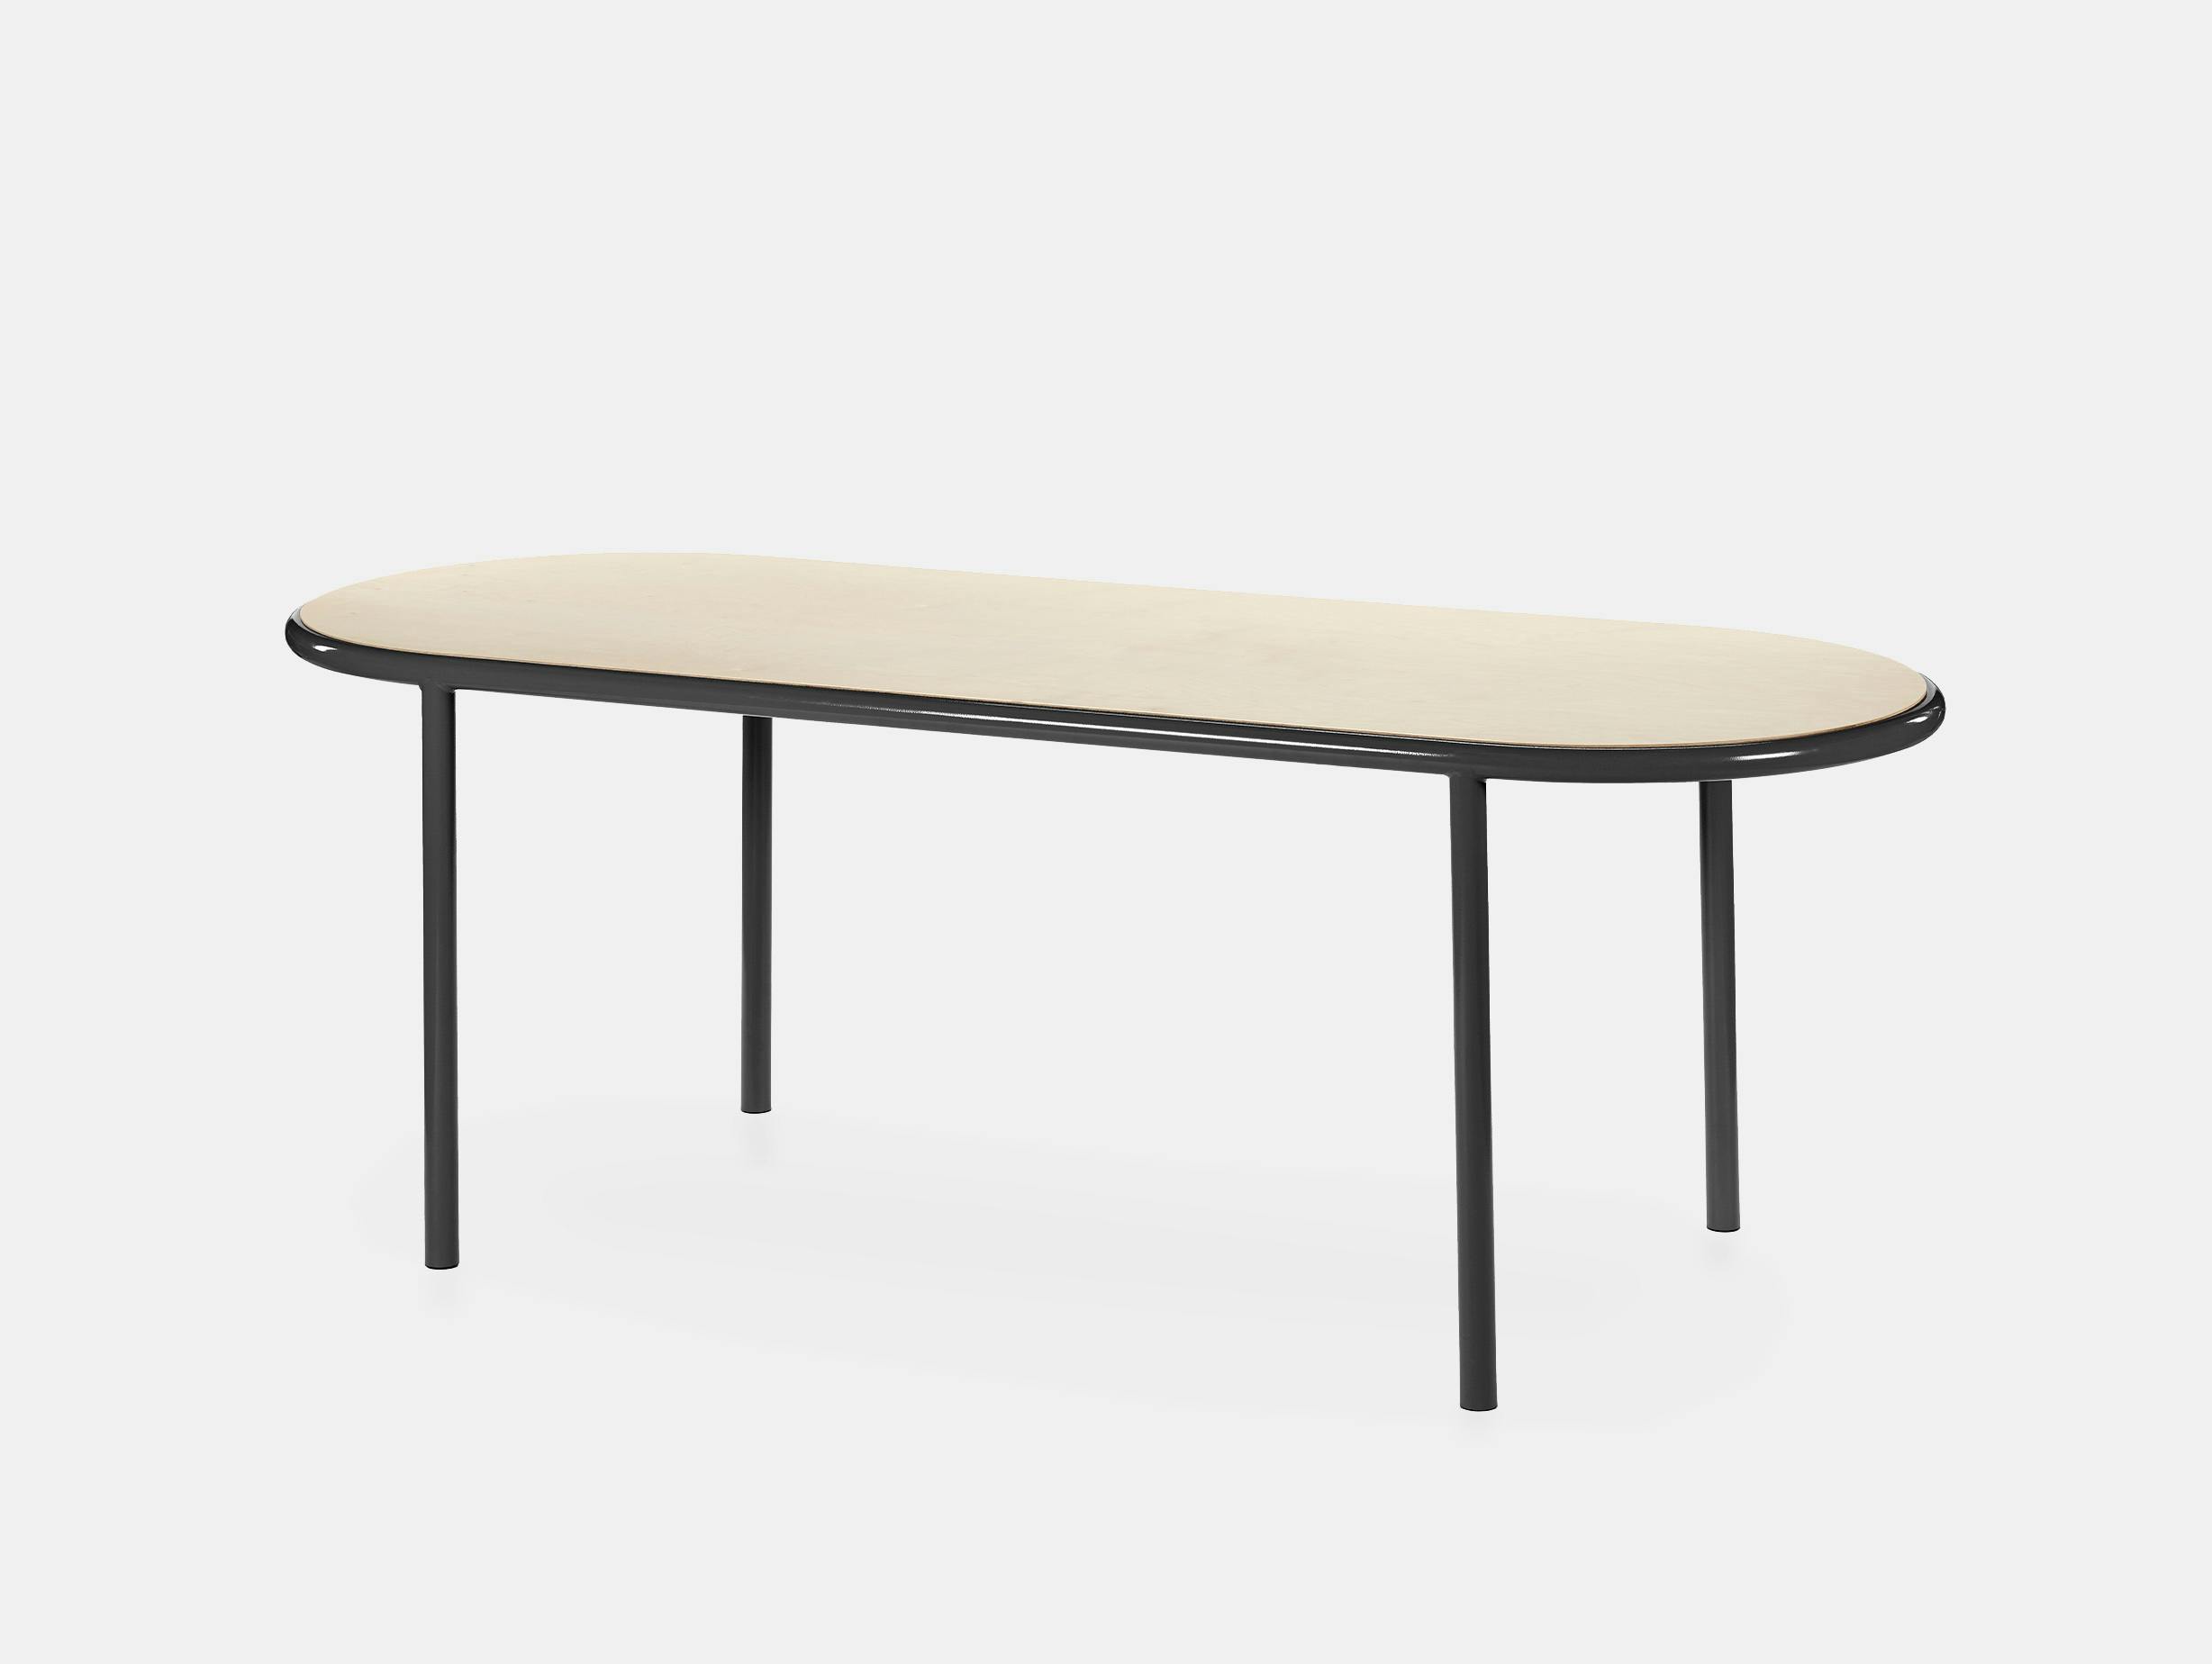 Muller van severen wooden table oval black birch